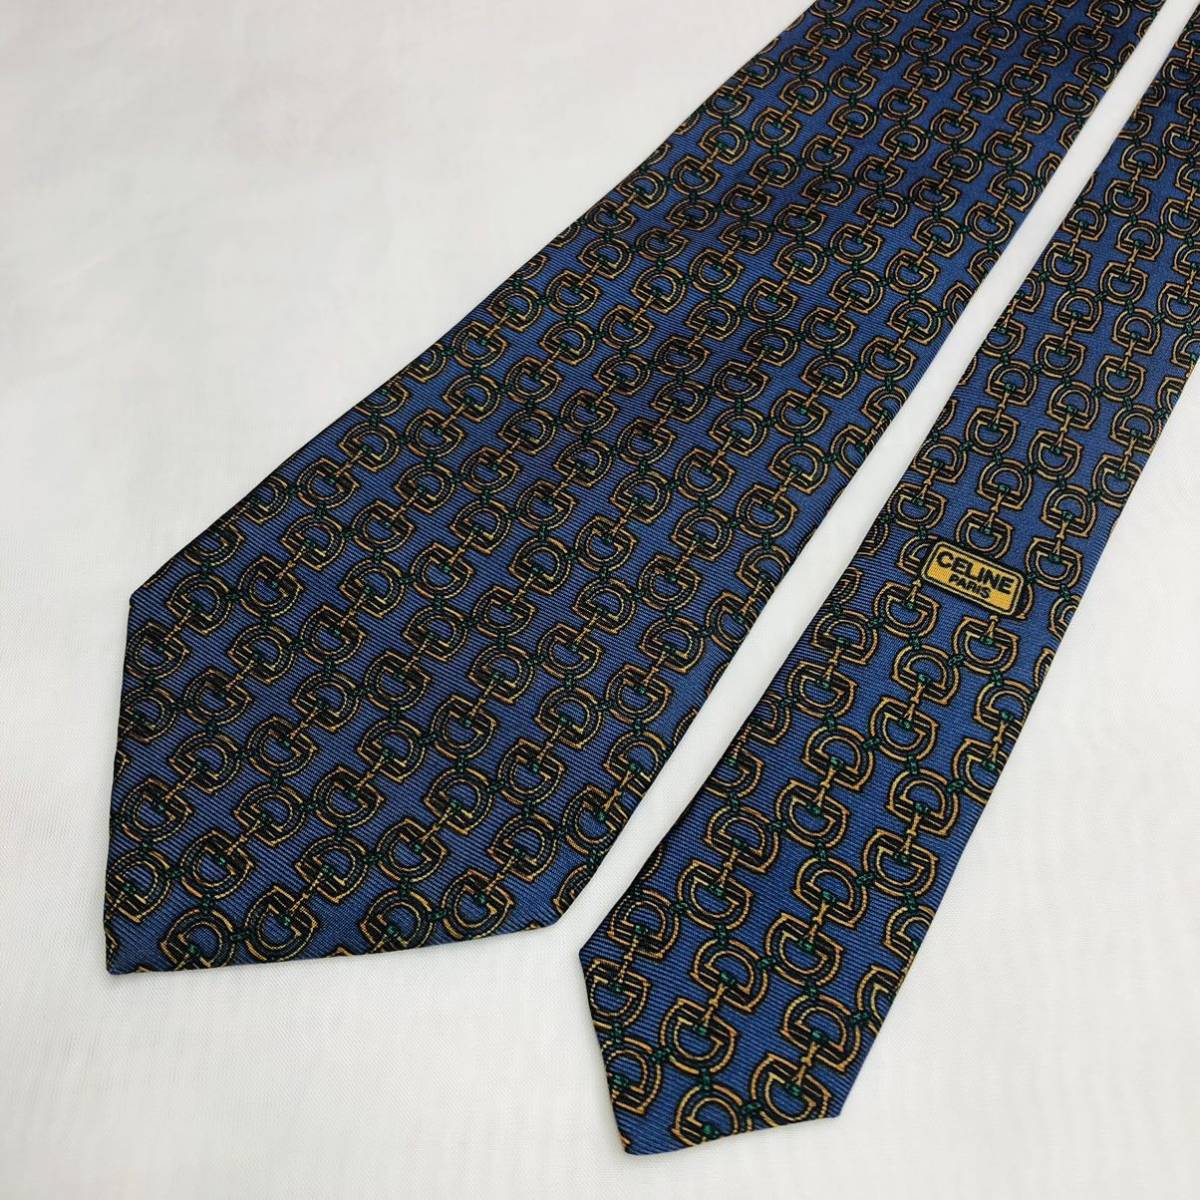 CELINE Celine necktie high brand navy total pattern high class silk 100%